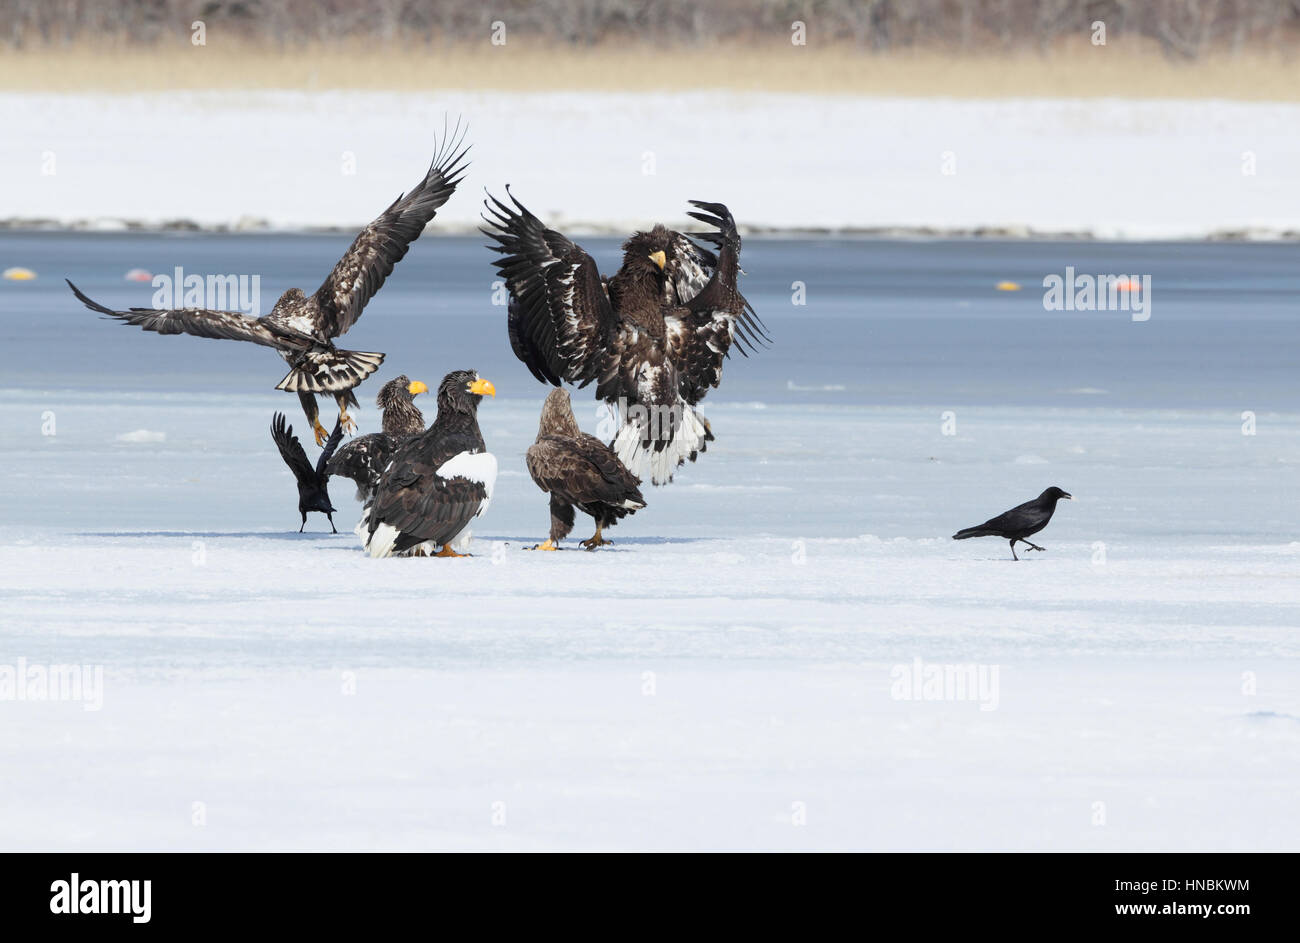 Steller's Sea-Eagle (Haliaeetus pelagicus), 1 White-tailed Eagle (Haliaeetus albicilla) & 2 Large-billed Crow (Corvus macrorhynchos) on ice, Japan Stock Photo